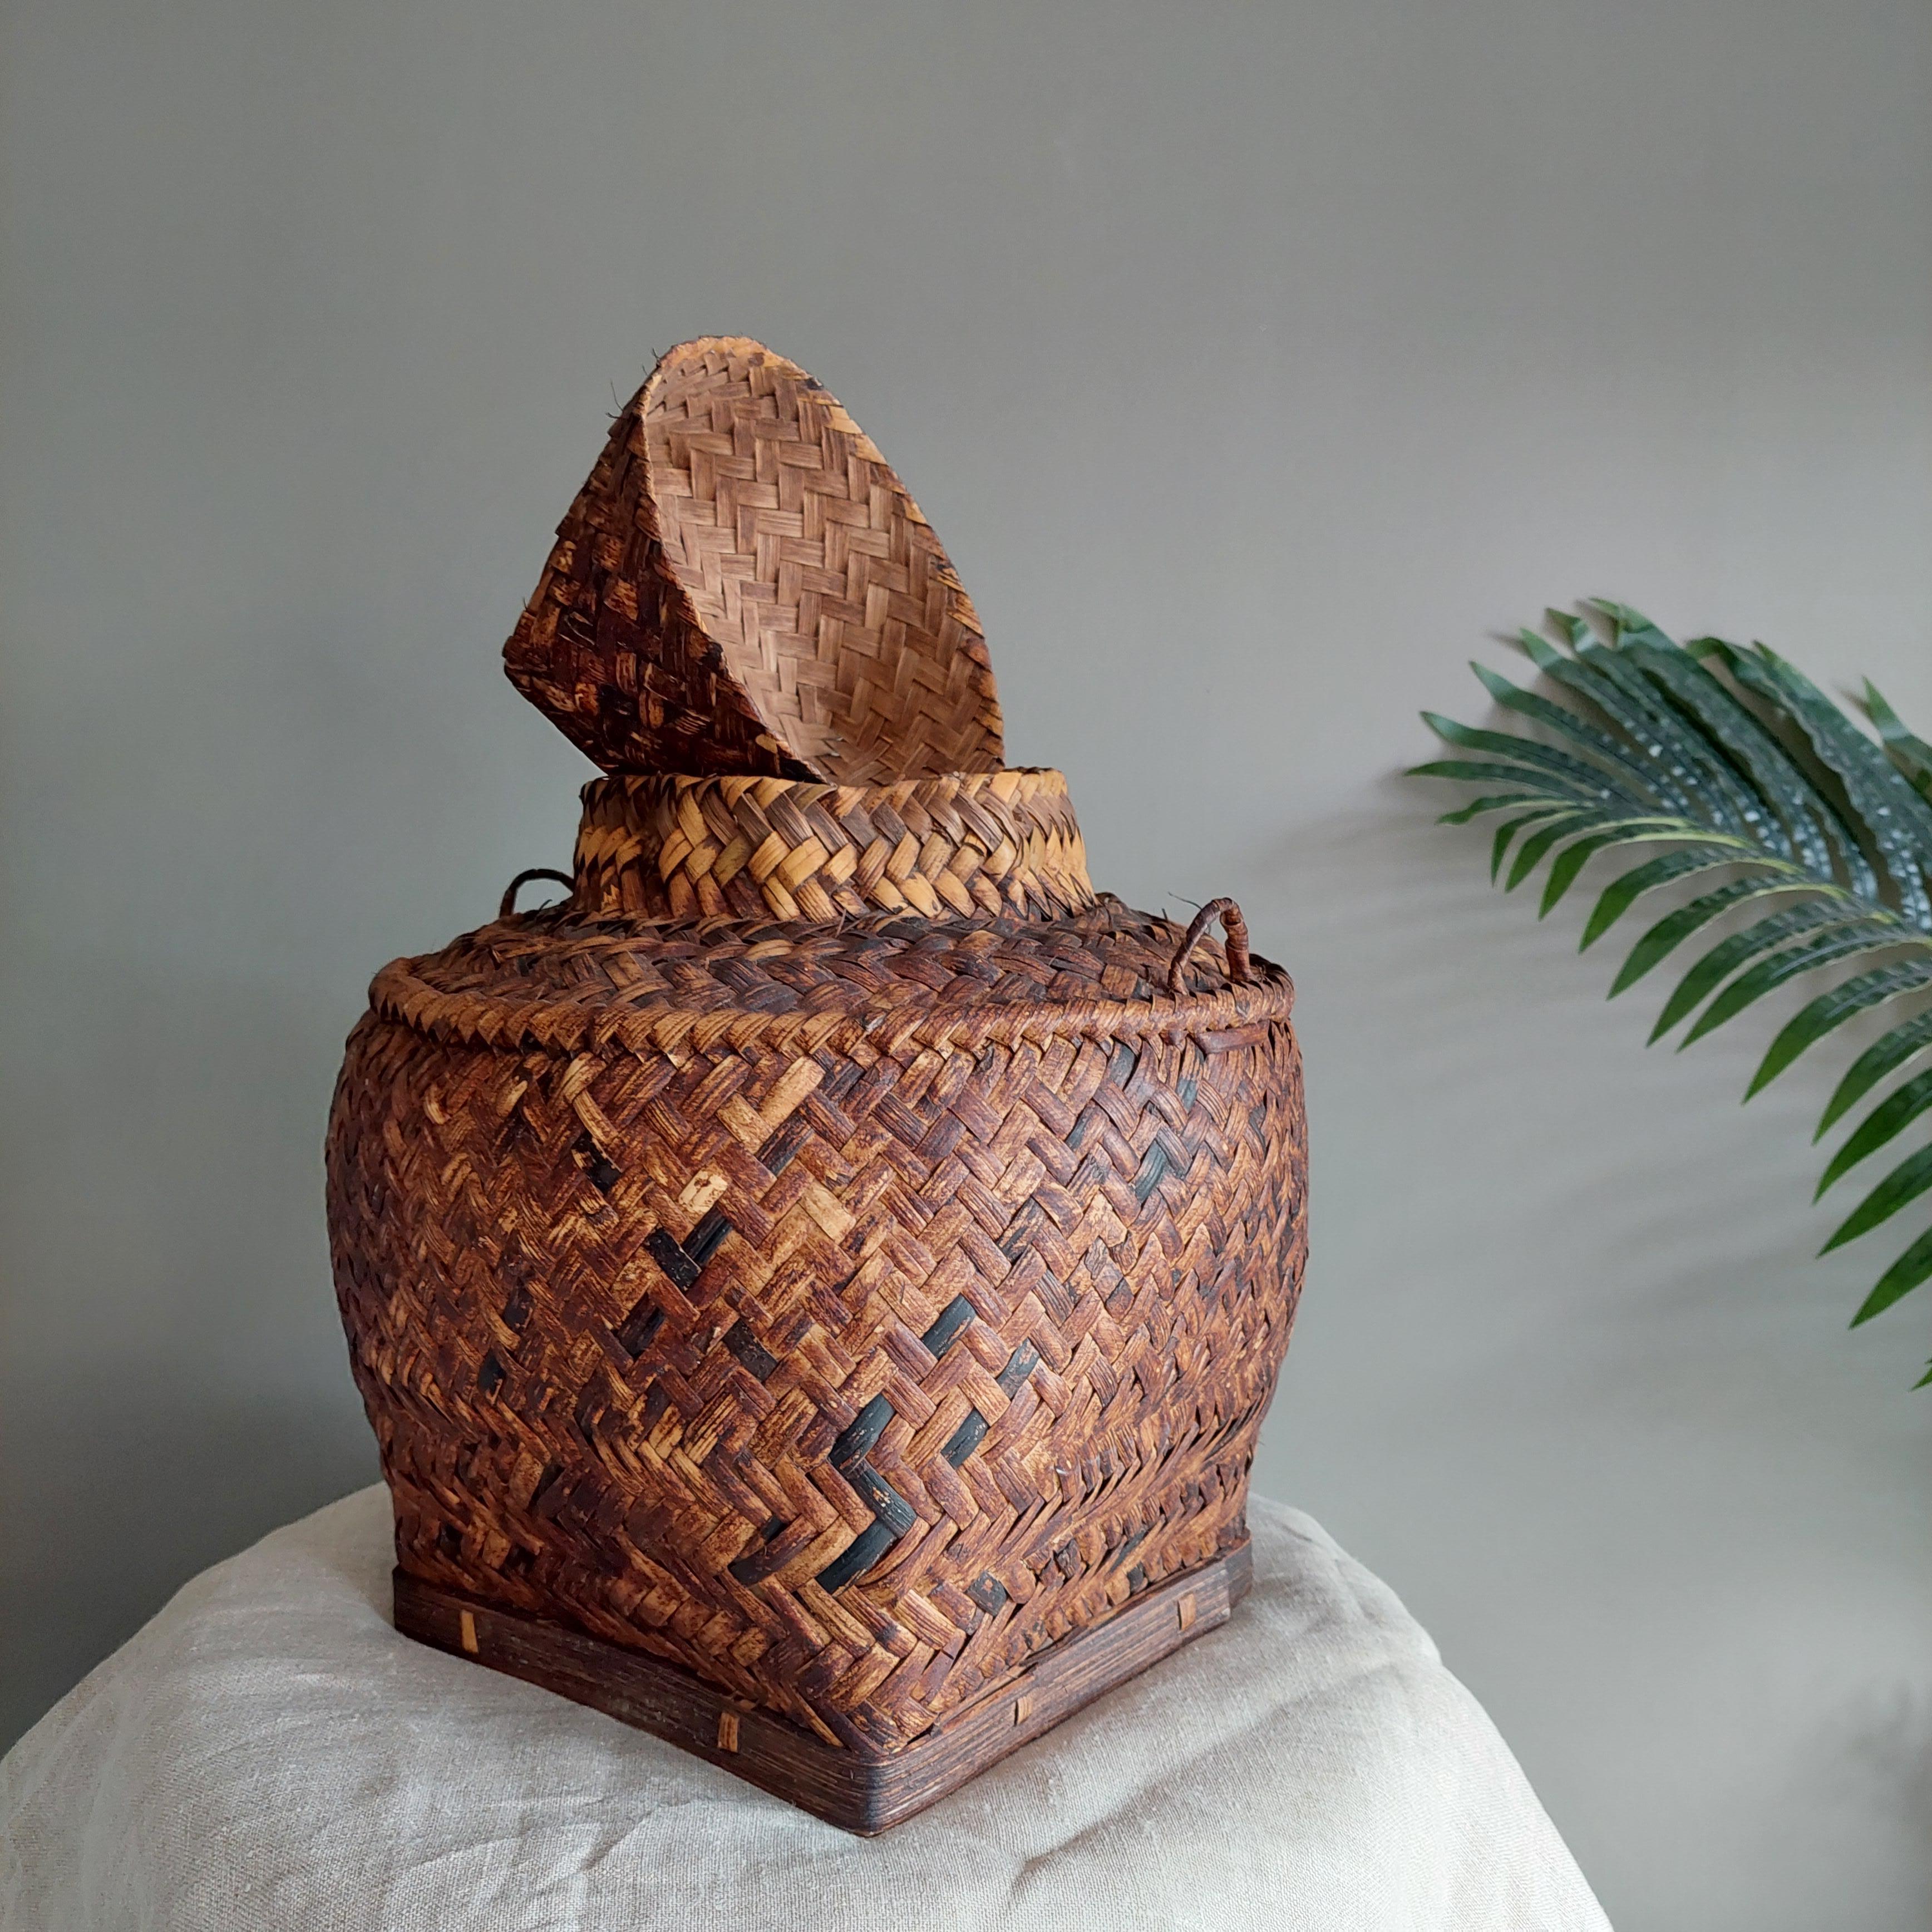 Panier asiatique vintage avec couvercle.
Joli panier en rotin à chevrons.

Ce magnifique panier à riz de taille moyenne, tissé à la main, probablement par la tribu Tagbanwa de Palawan aux Philippines, présente une forme attrayante et un couvercle